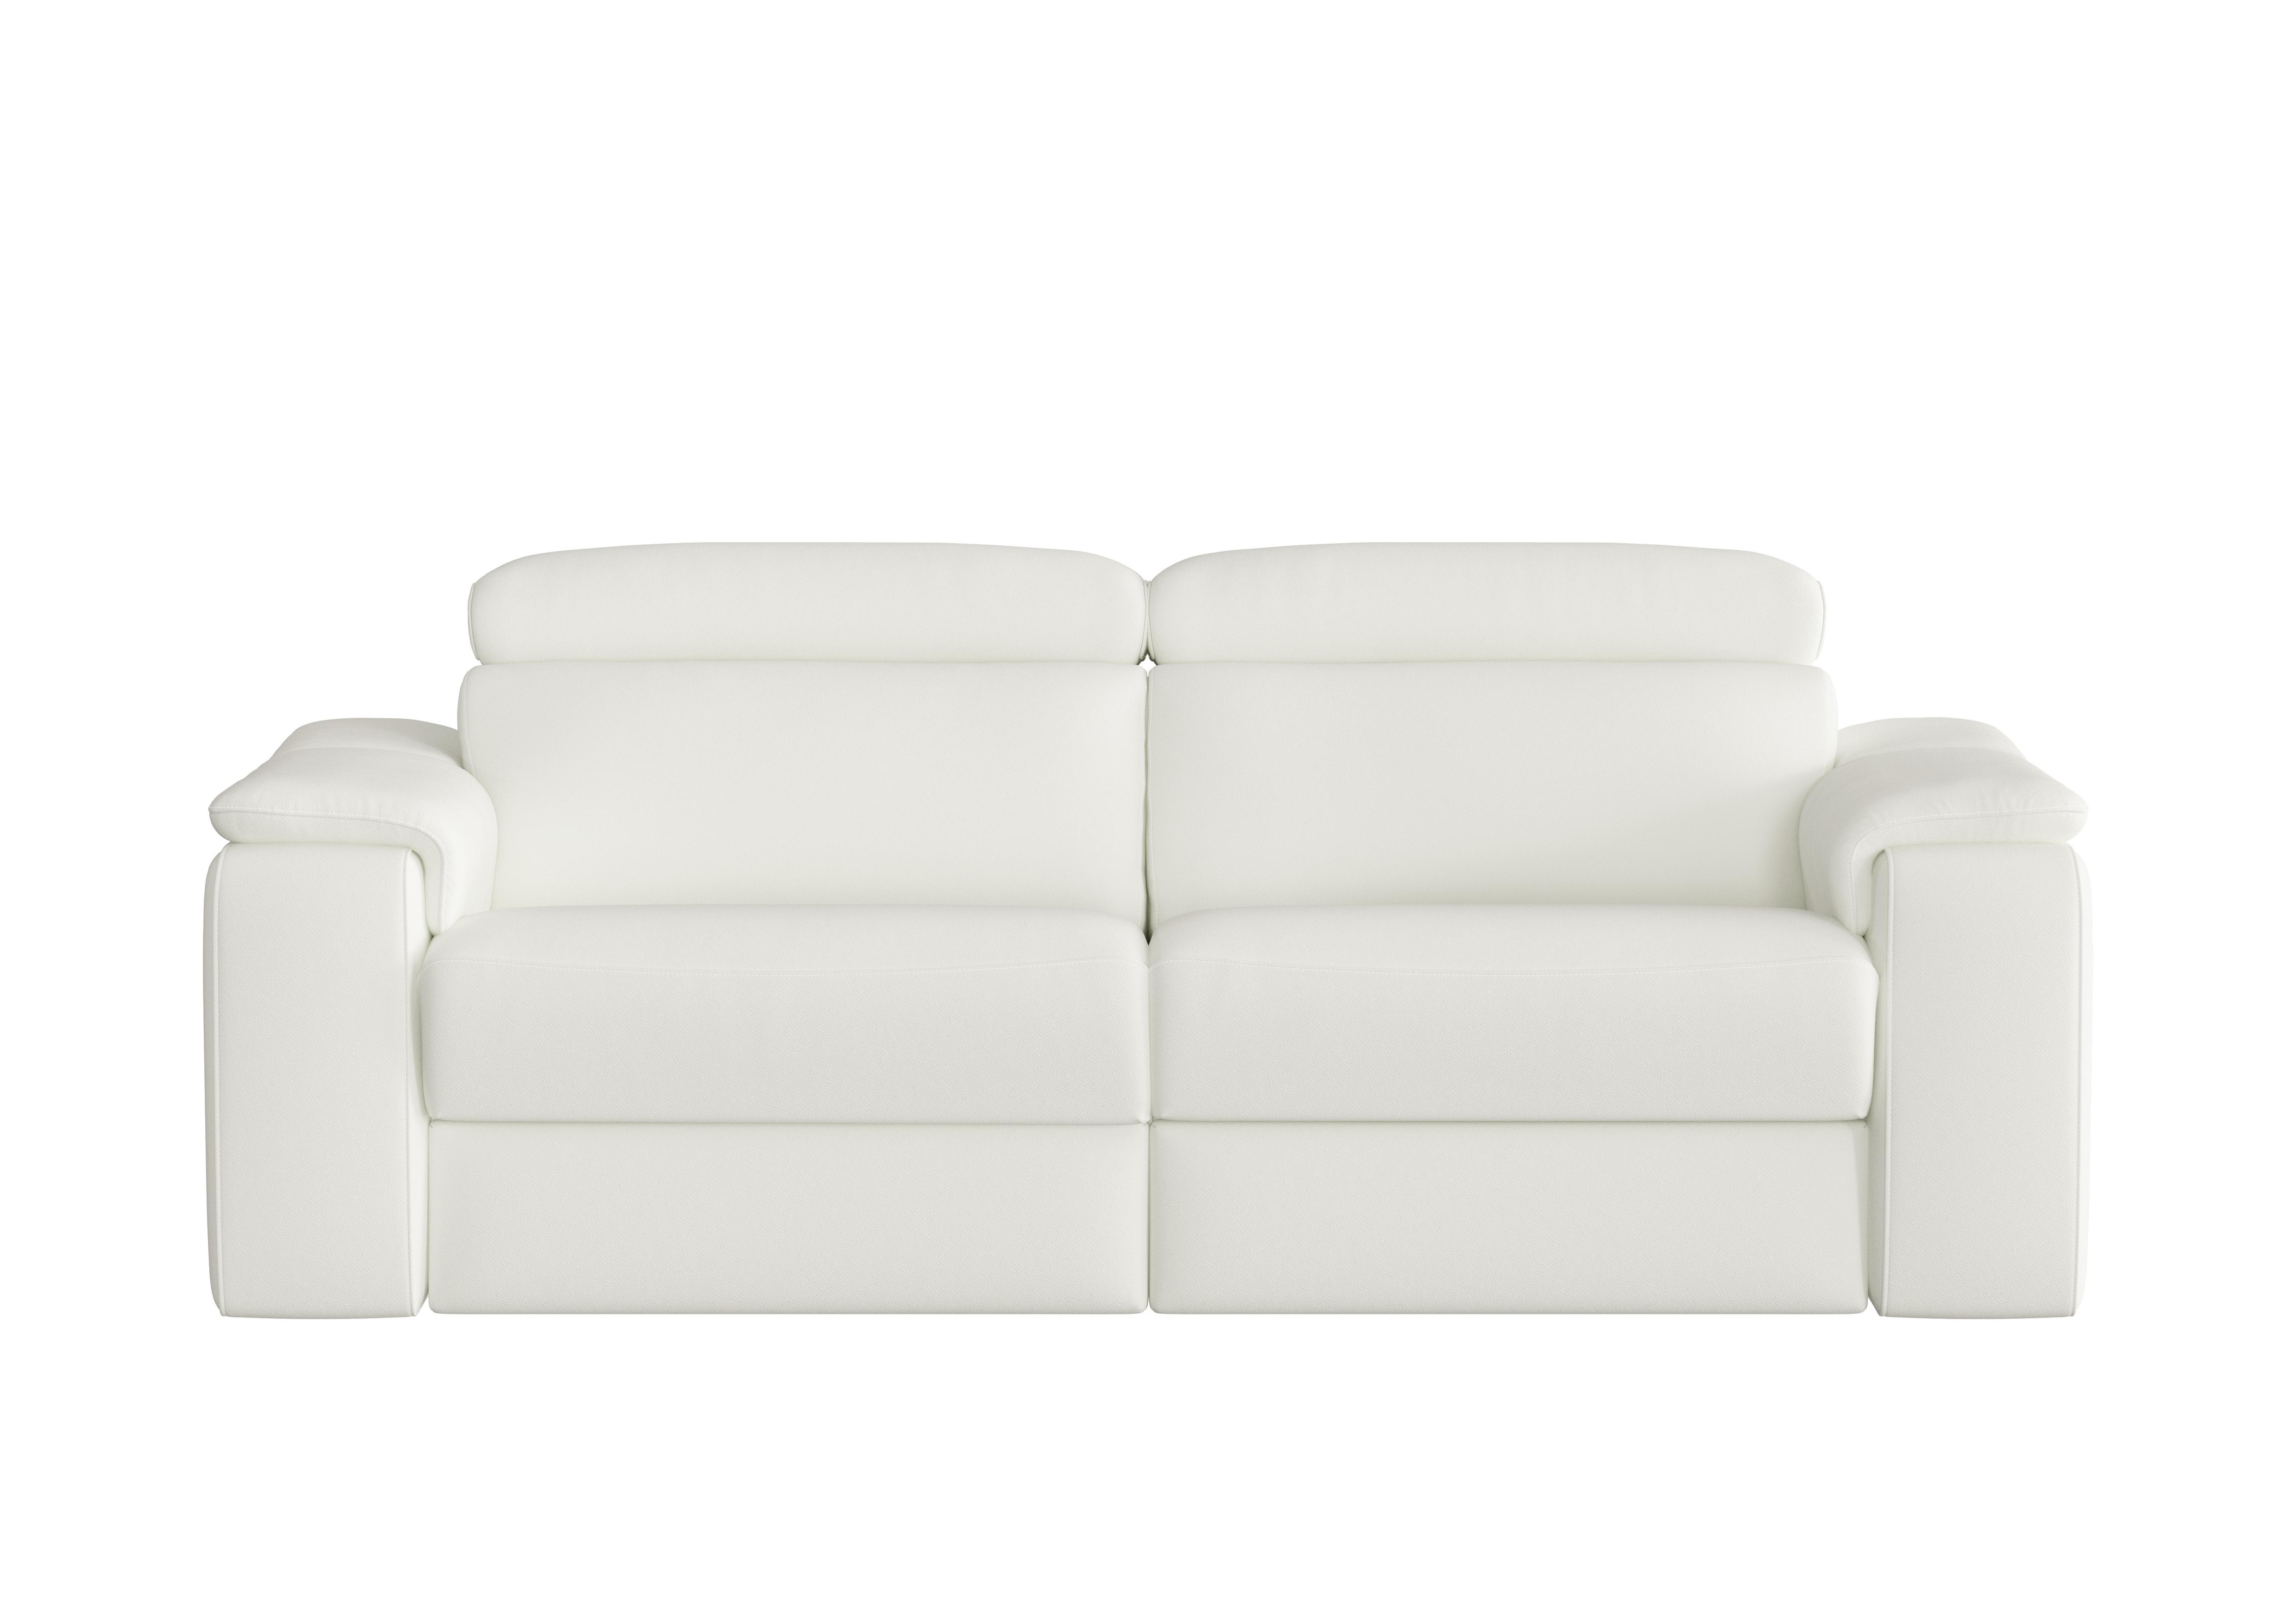 Davide 3 Seater Leather Sofa in 370 Torello Bianco Puro on Furniture Village